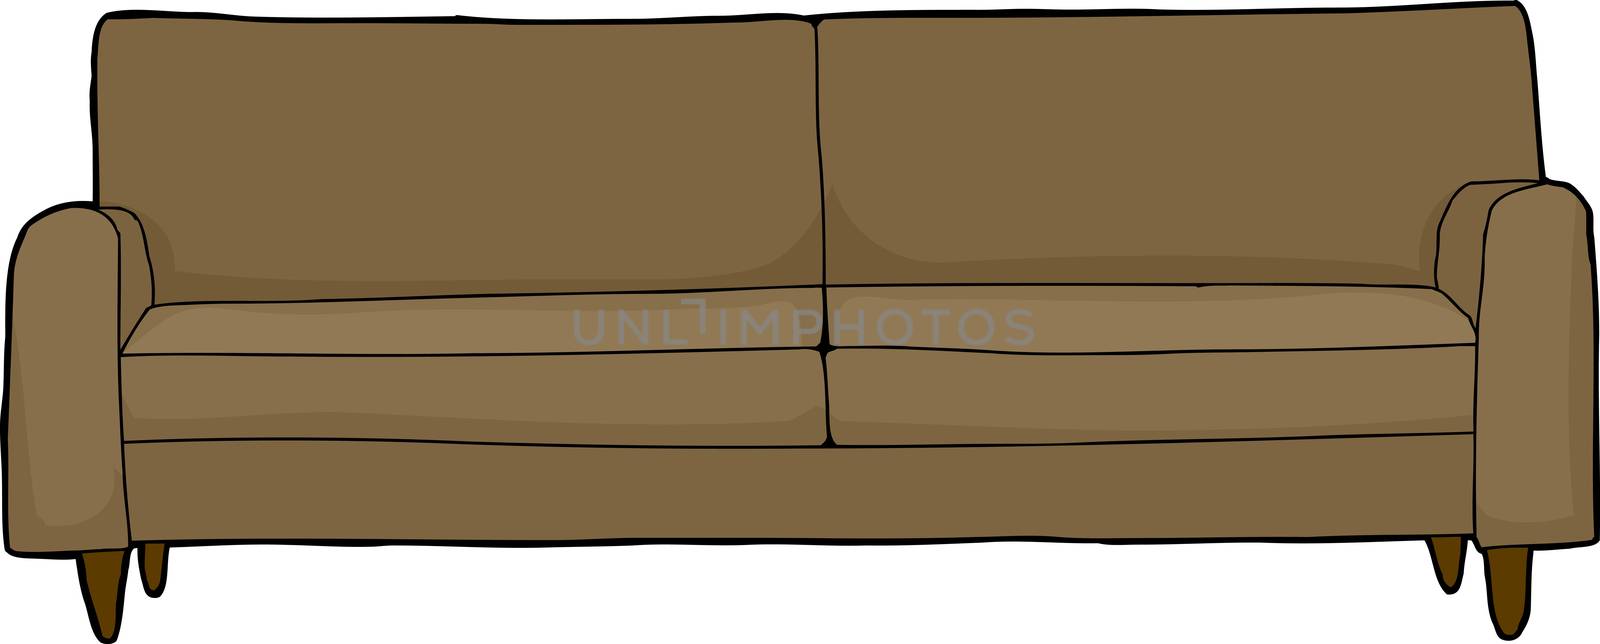 Isolated Sofa Cartoon by TheBlackRhino